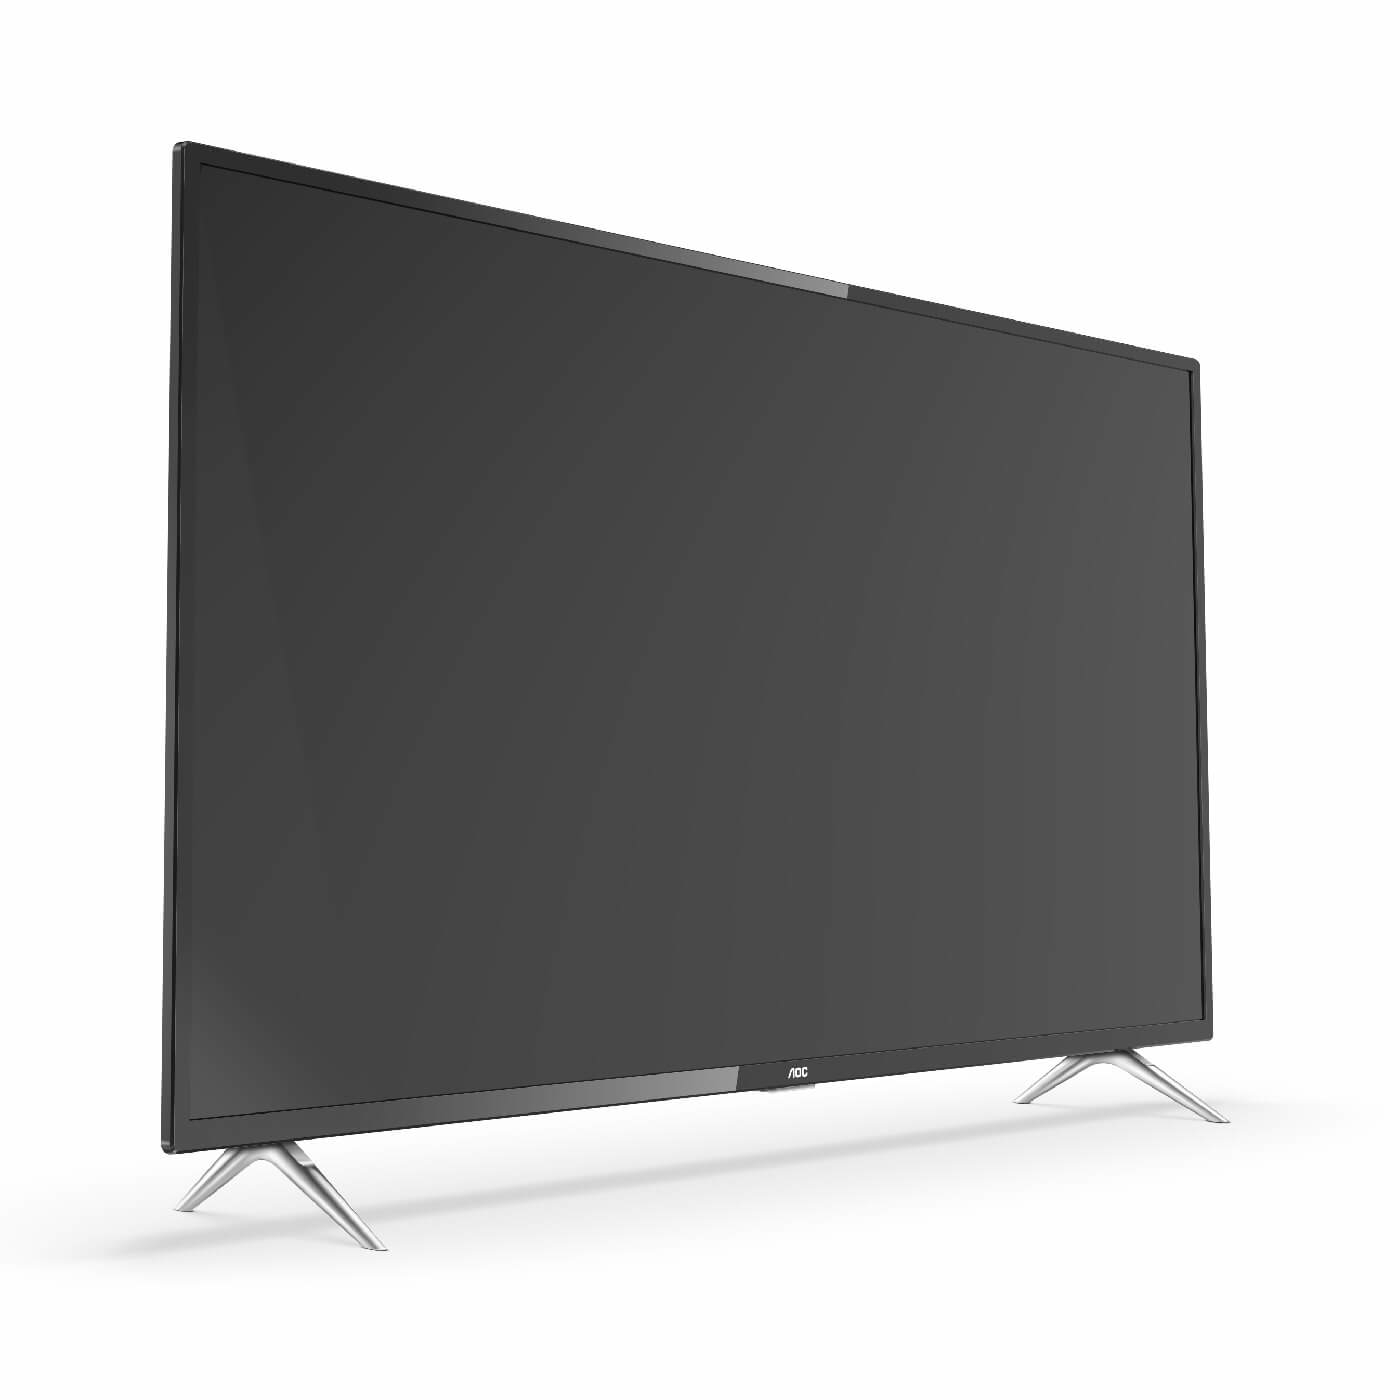 TV AOC 55" Pulgadas 139.7 cm 55U6295 4K-UHD LED Smart TV